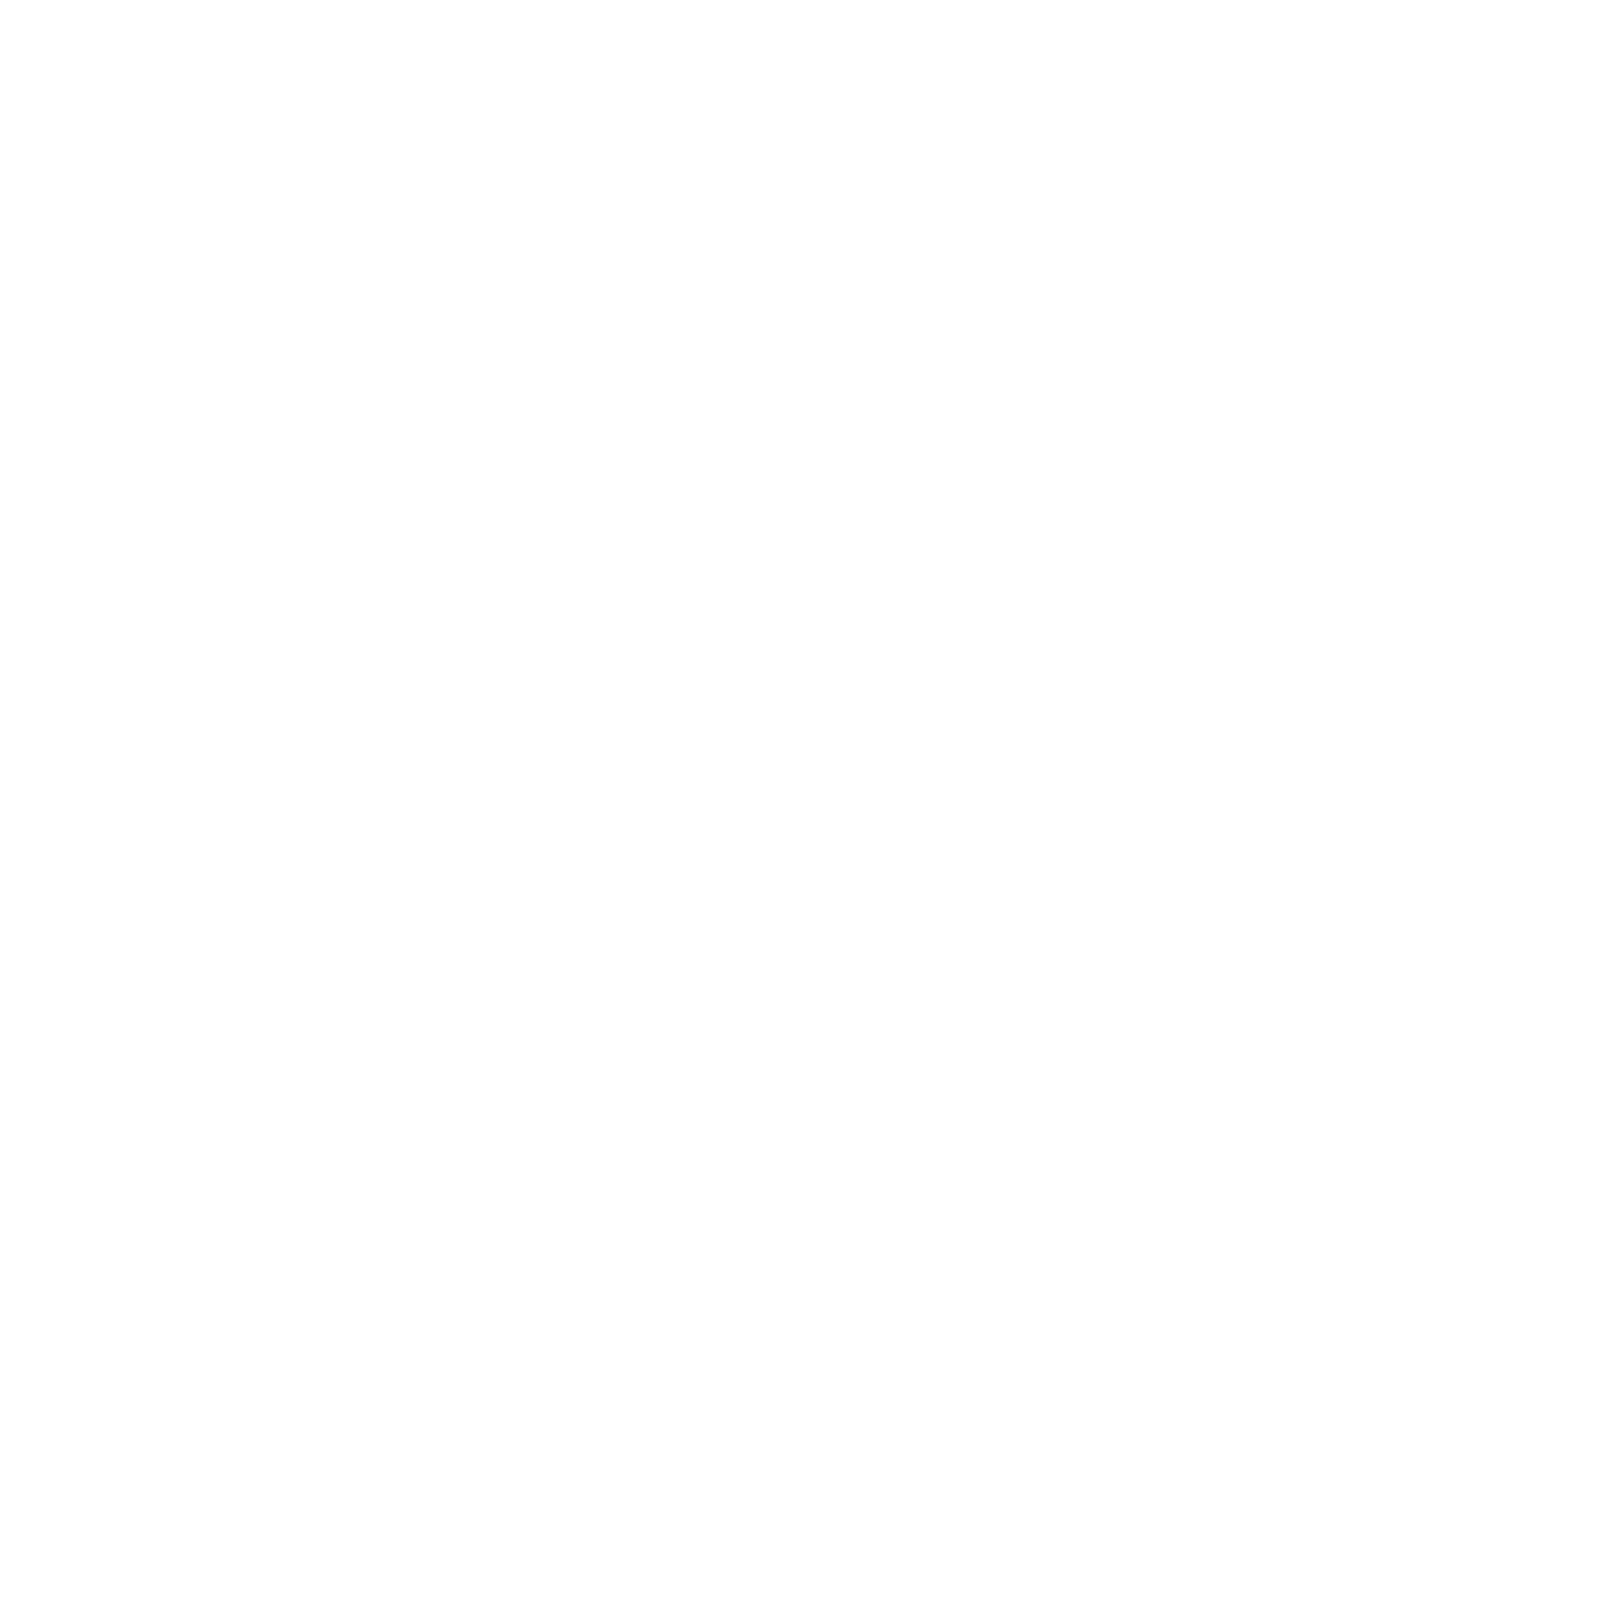 151 Digital